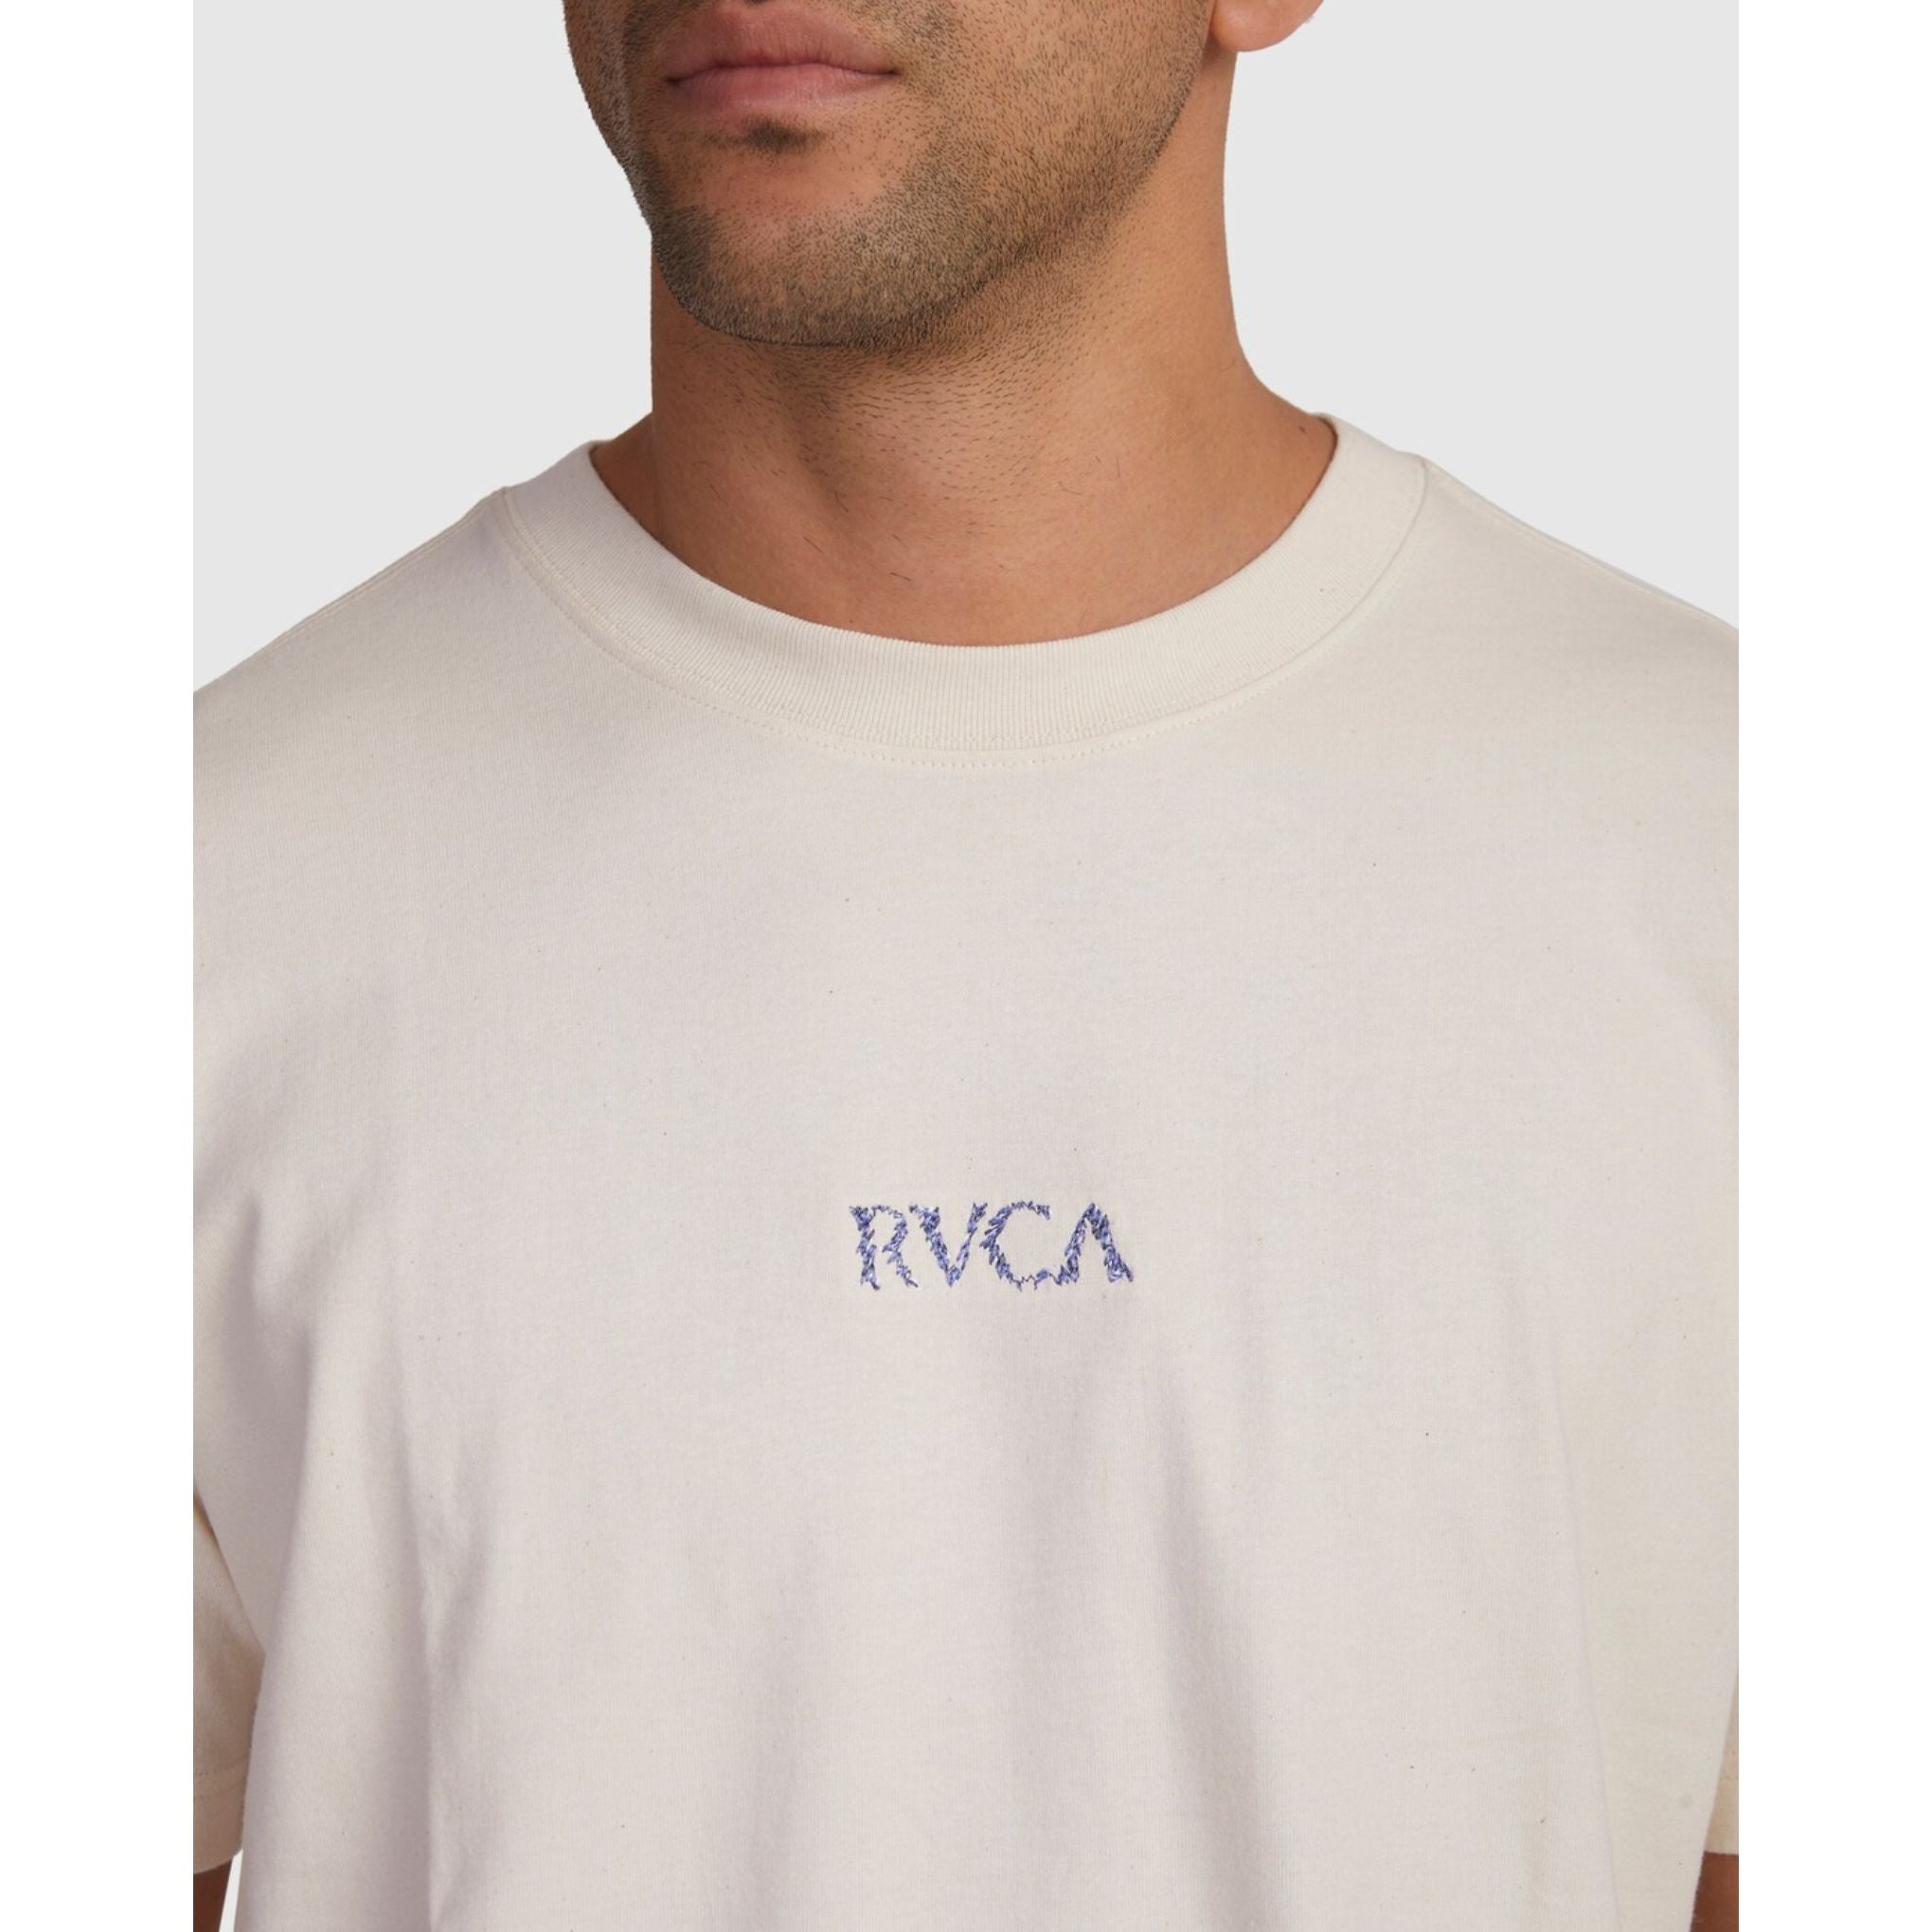 RVCA On A Thread Mens Tee